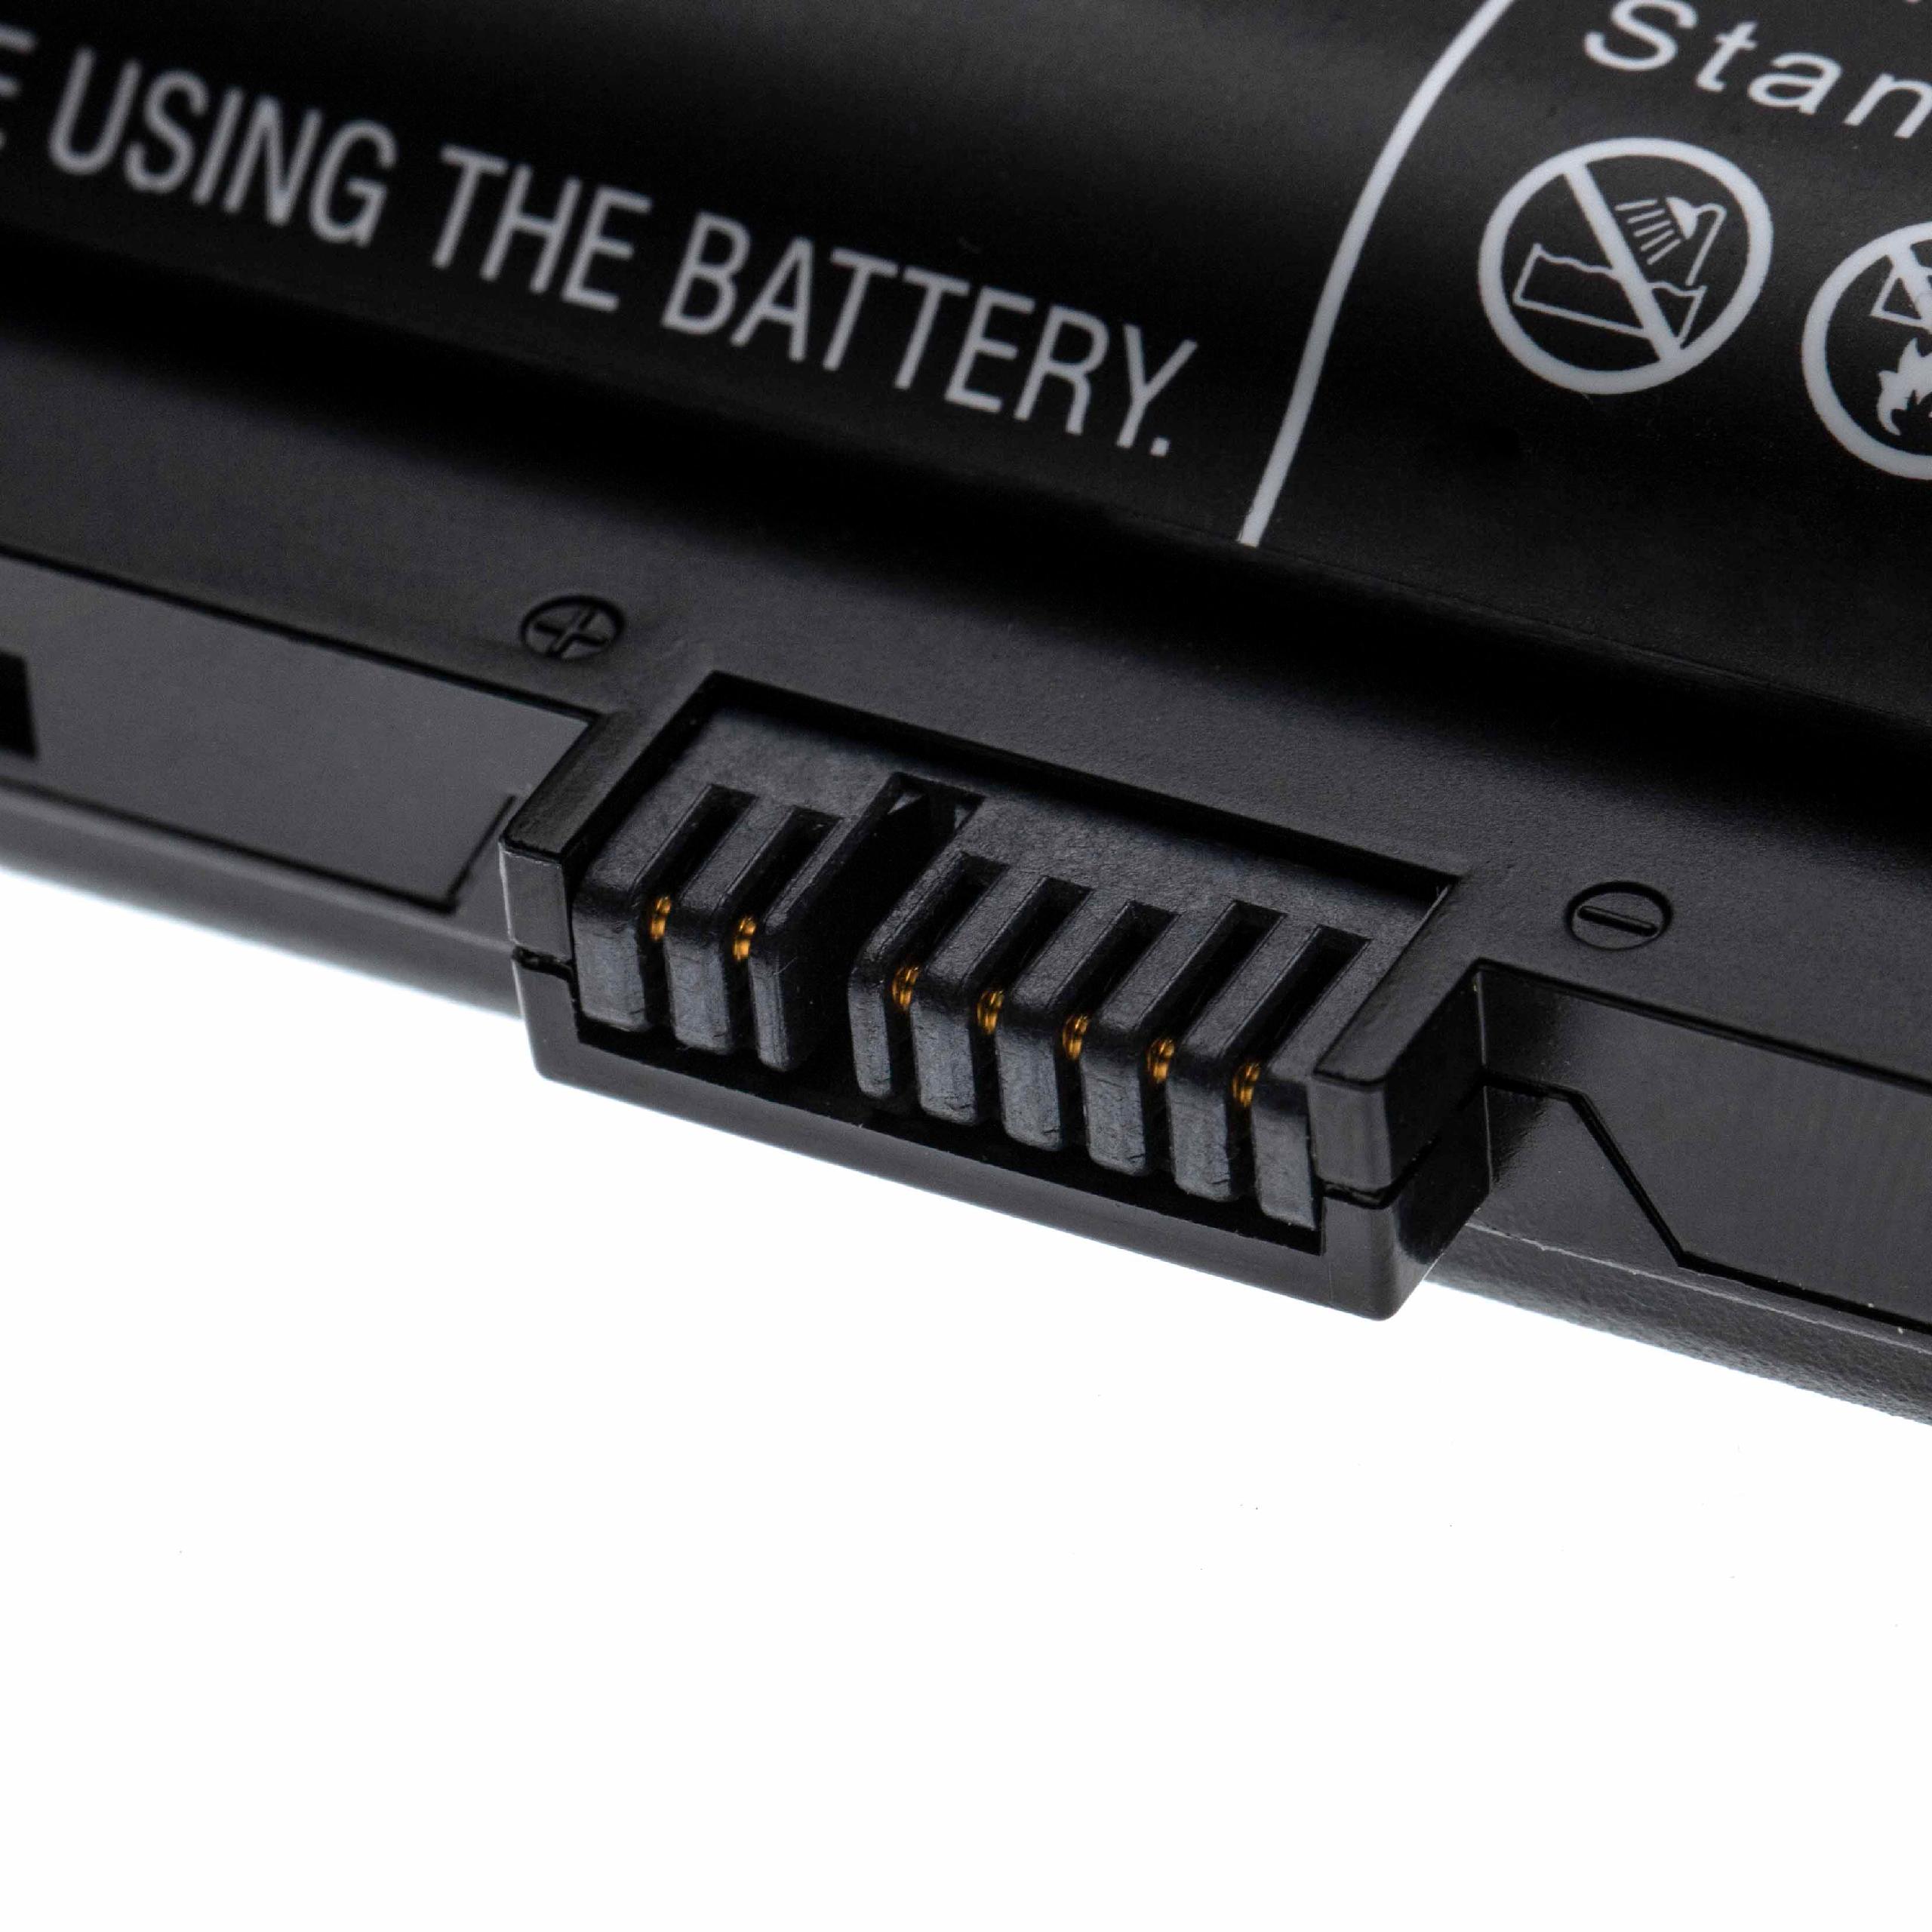 Akumulator do laptopa zamiennik Lenovo FRU00NY486, 00NY489, 00NY488, 00NY486 - 4400 mAh 10,8 V Li-Ion, czarny